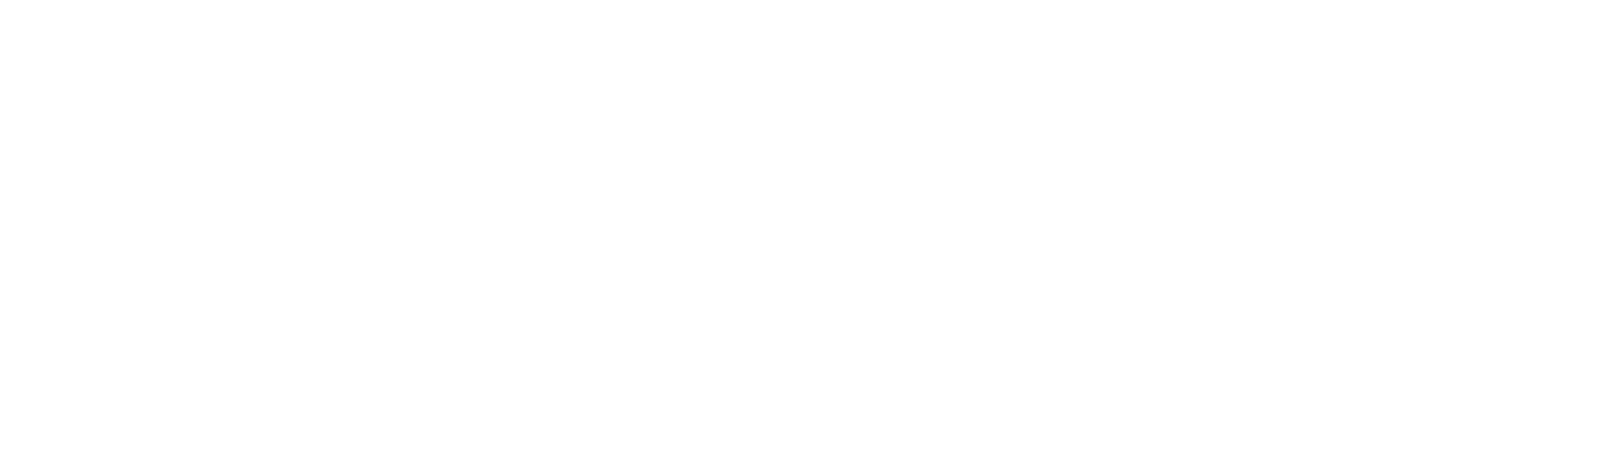 Everett Veterinary